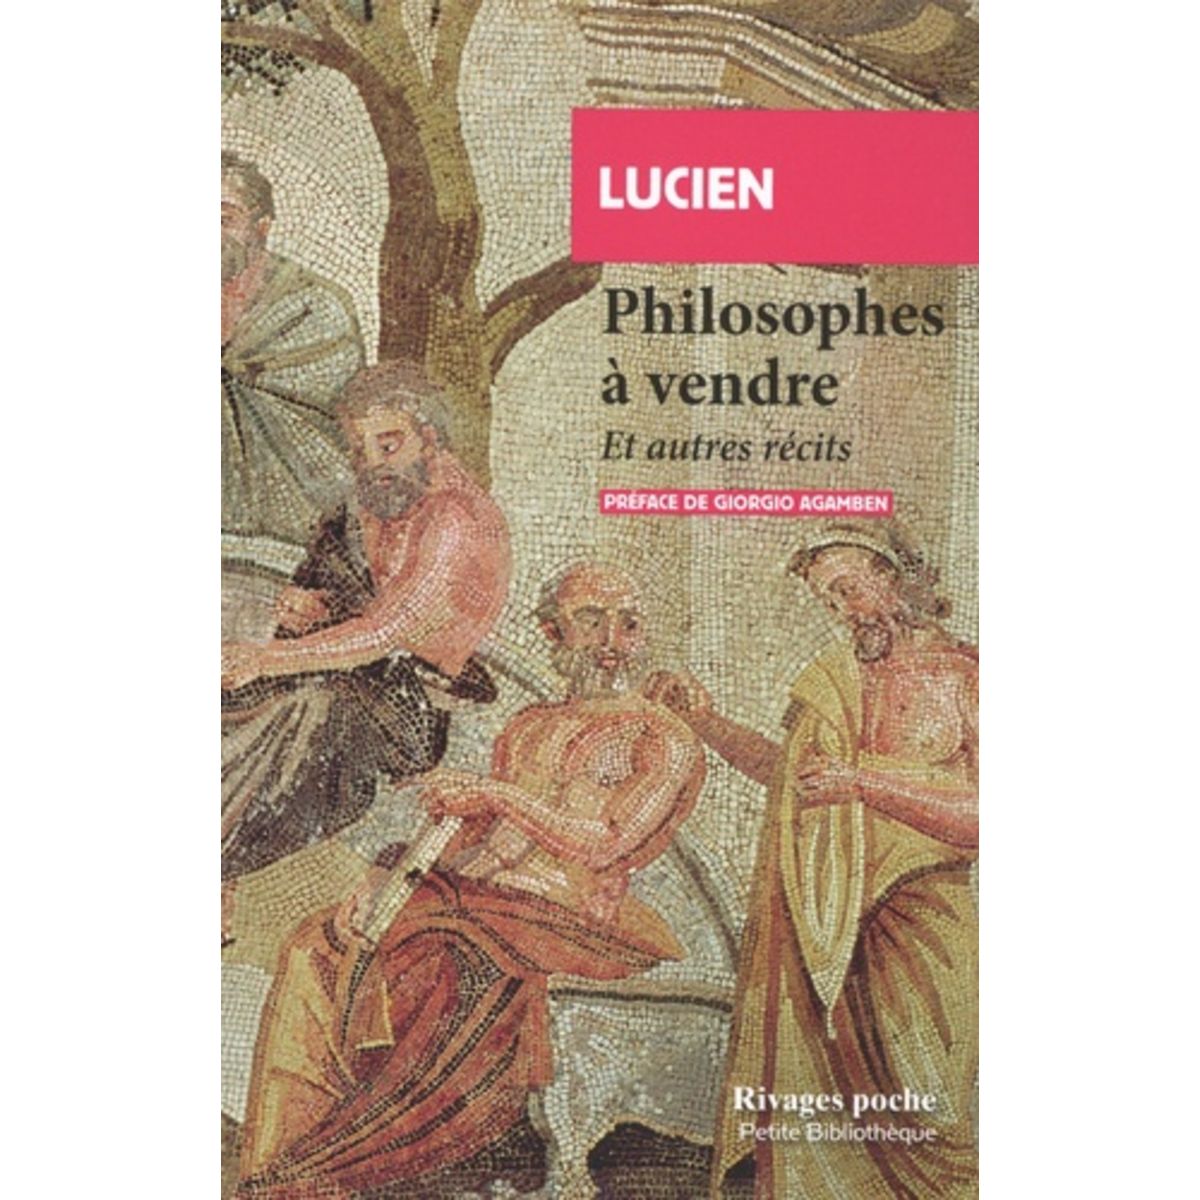  PHILOSOPHES A VENDRE. ET AUTRES RECITS, Lucien de Samosate